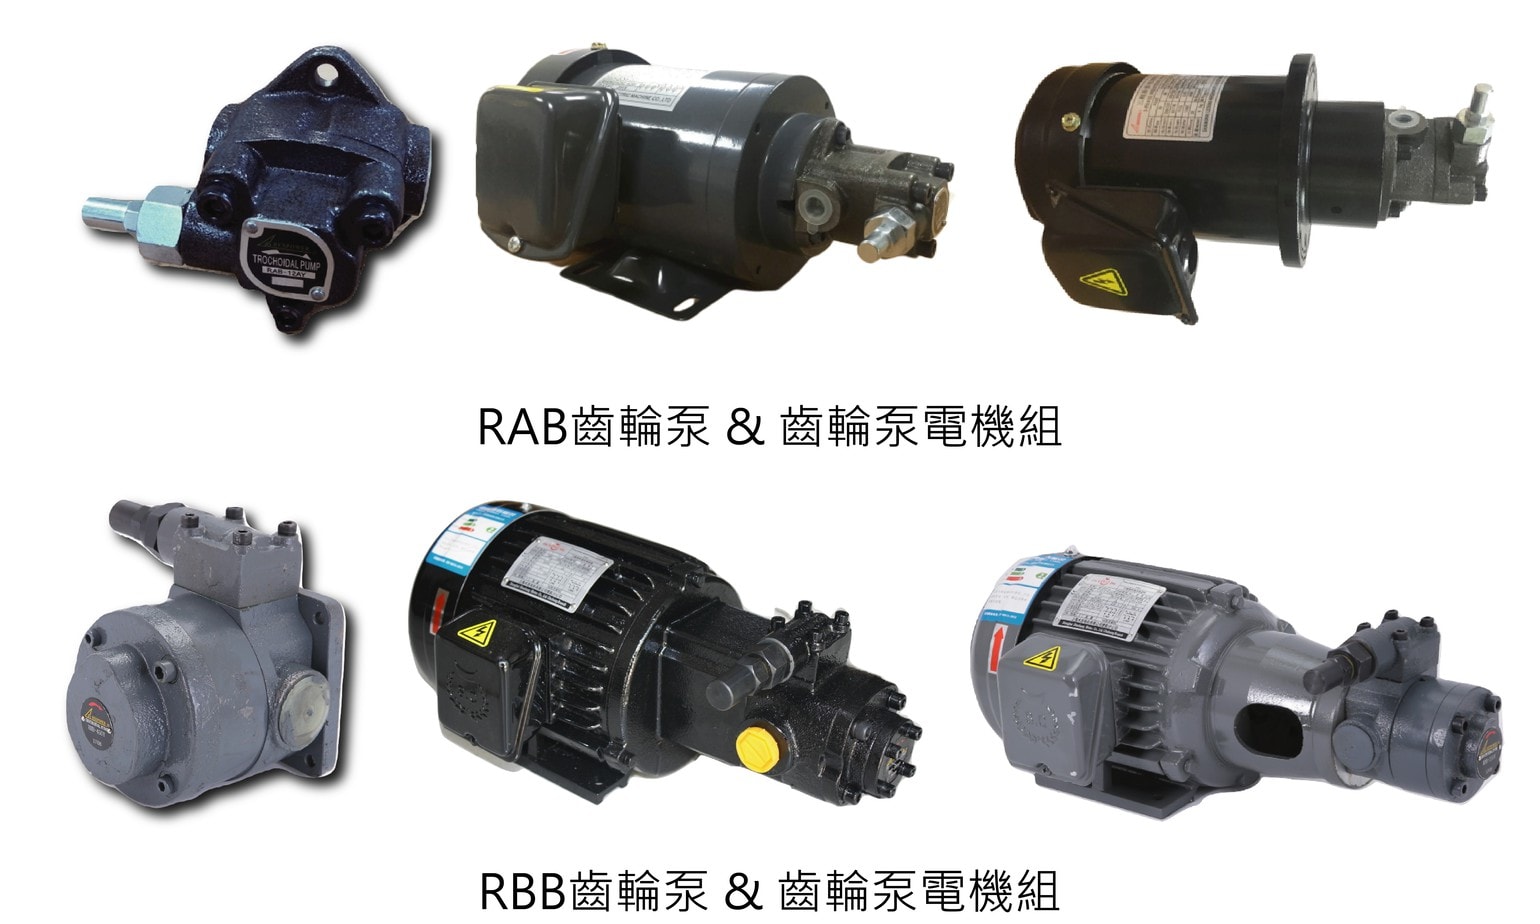 新產品發表-RAB系列 RBB系列 擺線齒輪泵